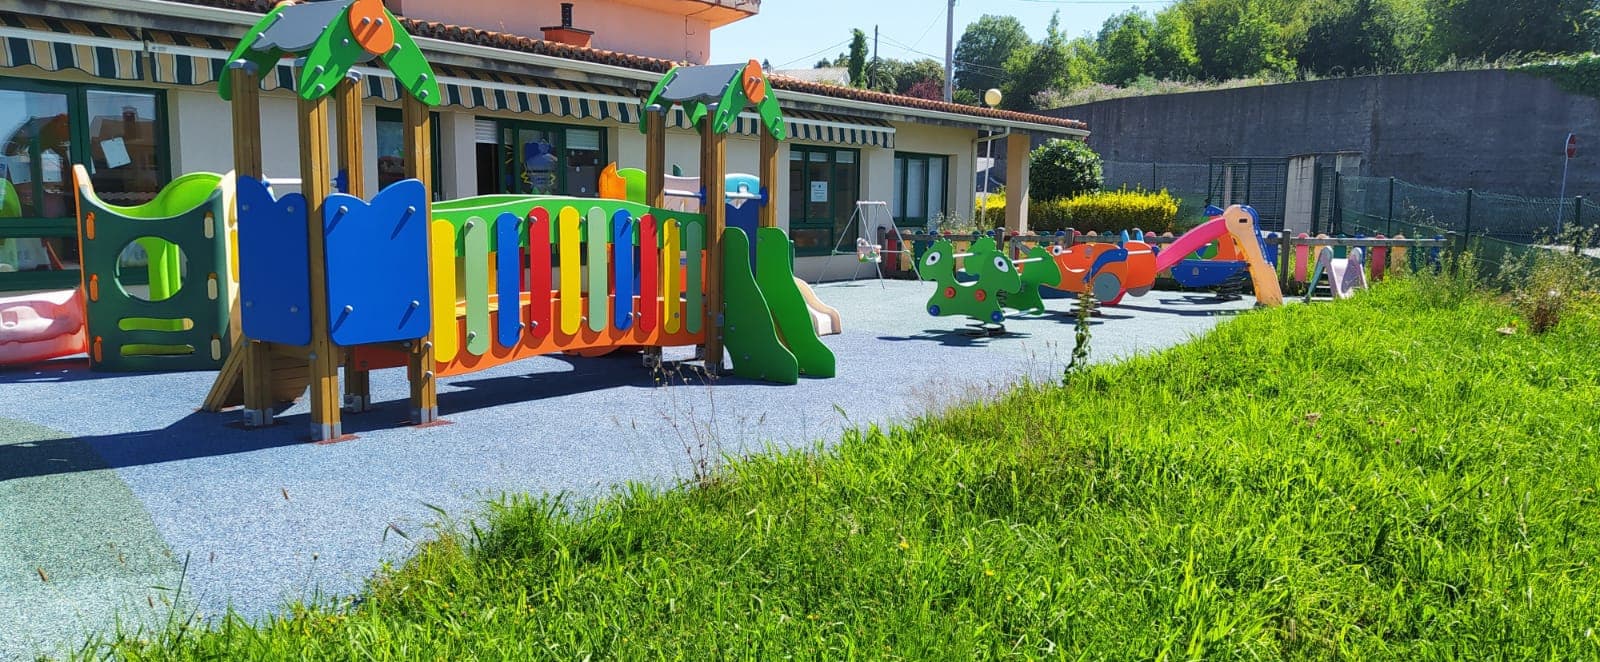 Servicios de nuestra escuela infantil en Bergondo - Escuela infantil con amplia variedad de actividades